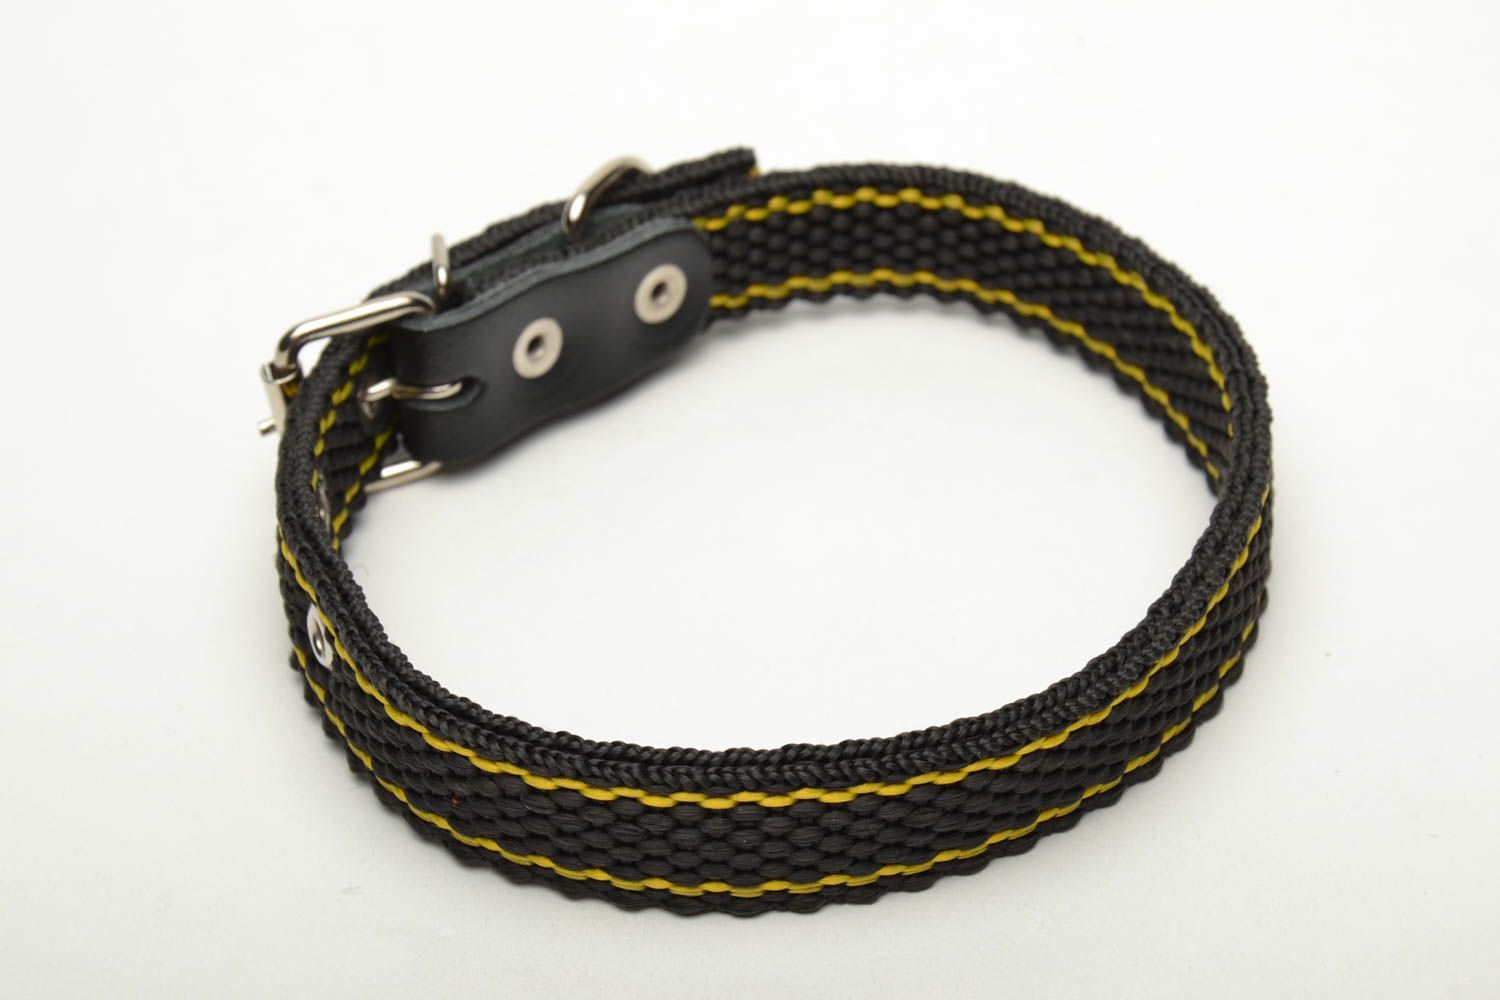 Textil Halsband für Hund in Schwarz foto 3